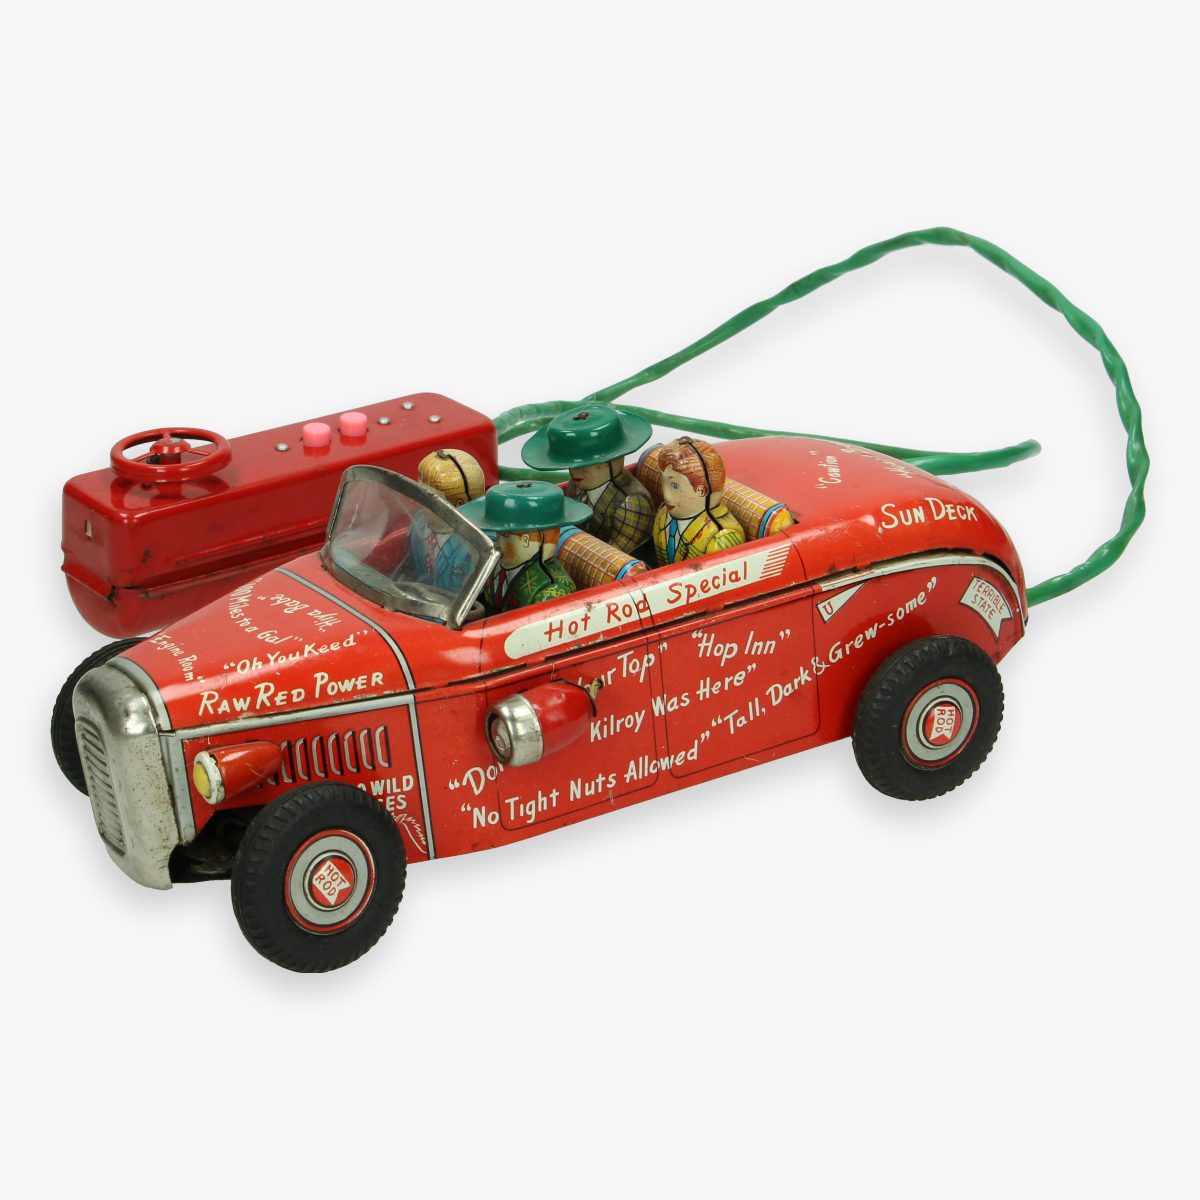 Afbeeldingen van tin toy hot rod special jaren 50 college jalopy line mar toys